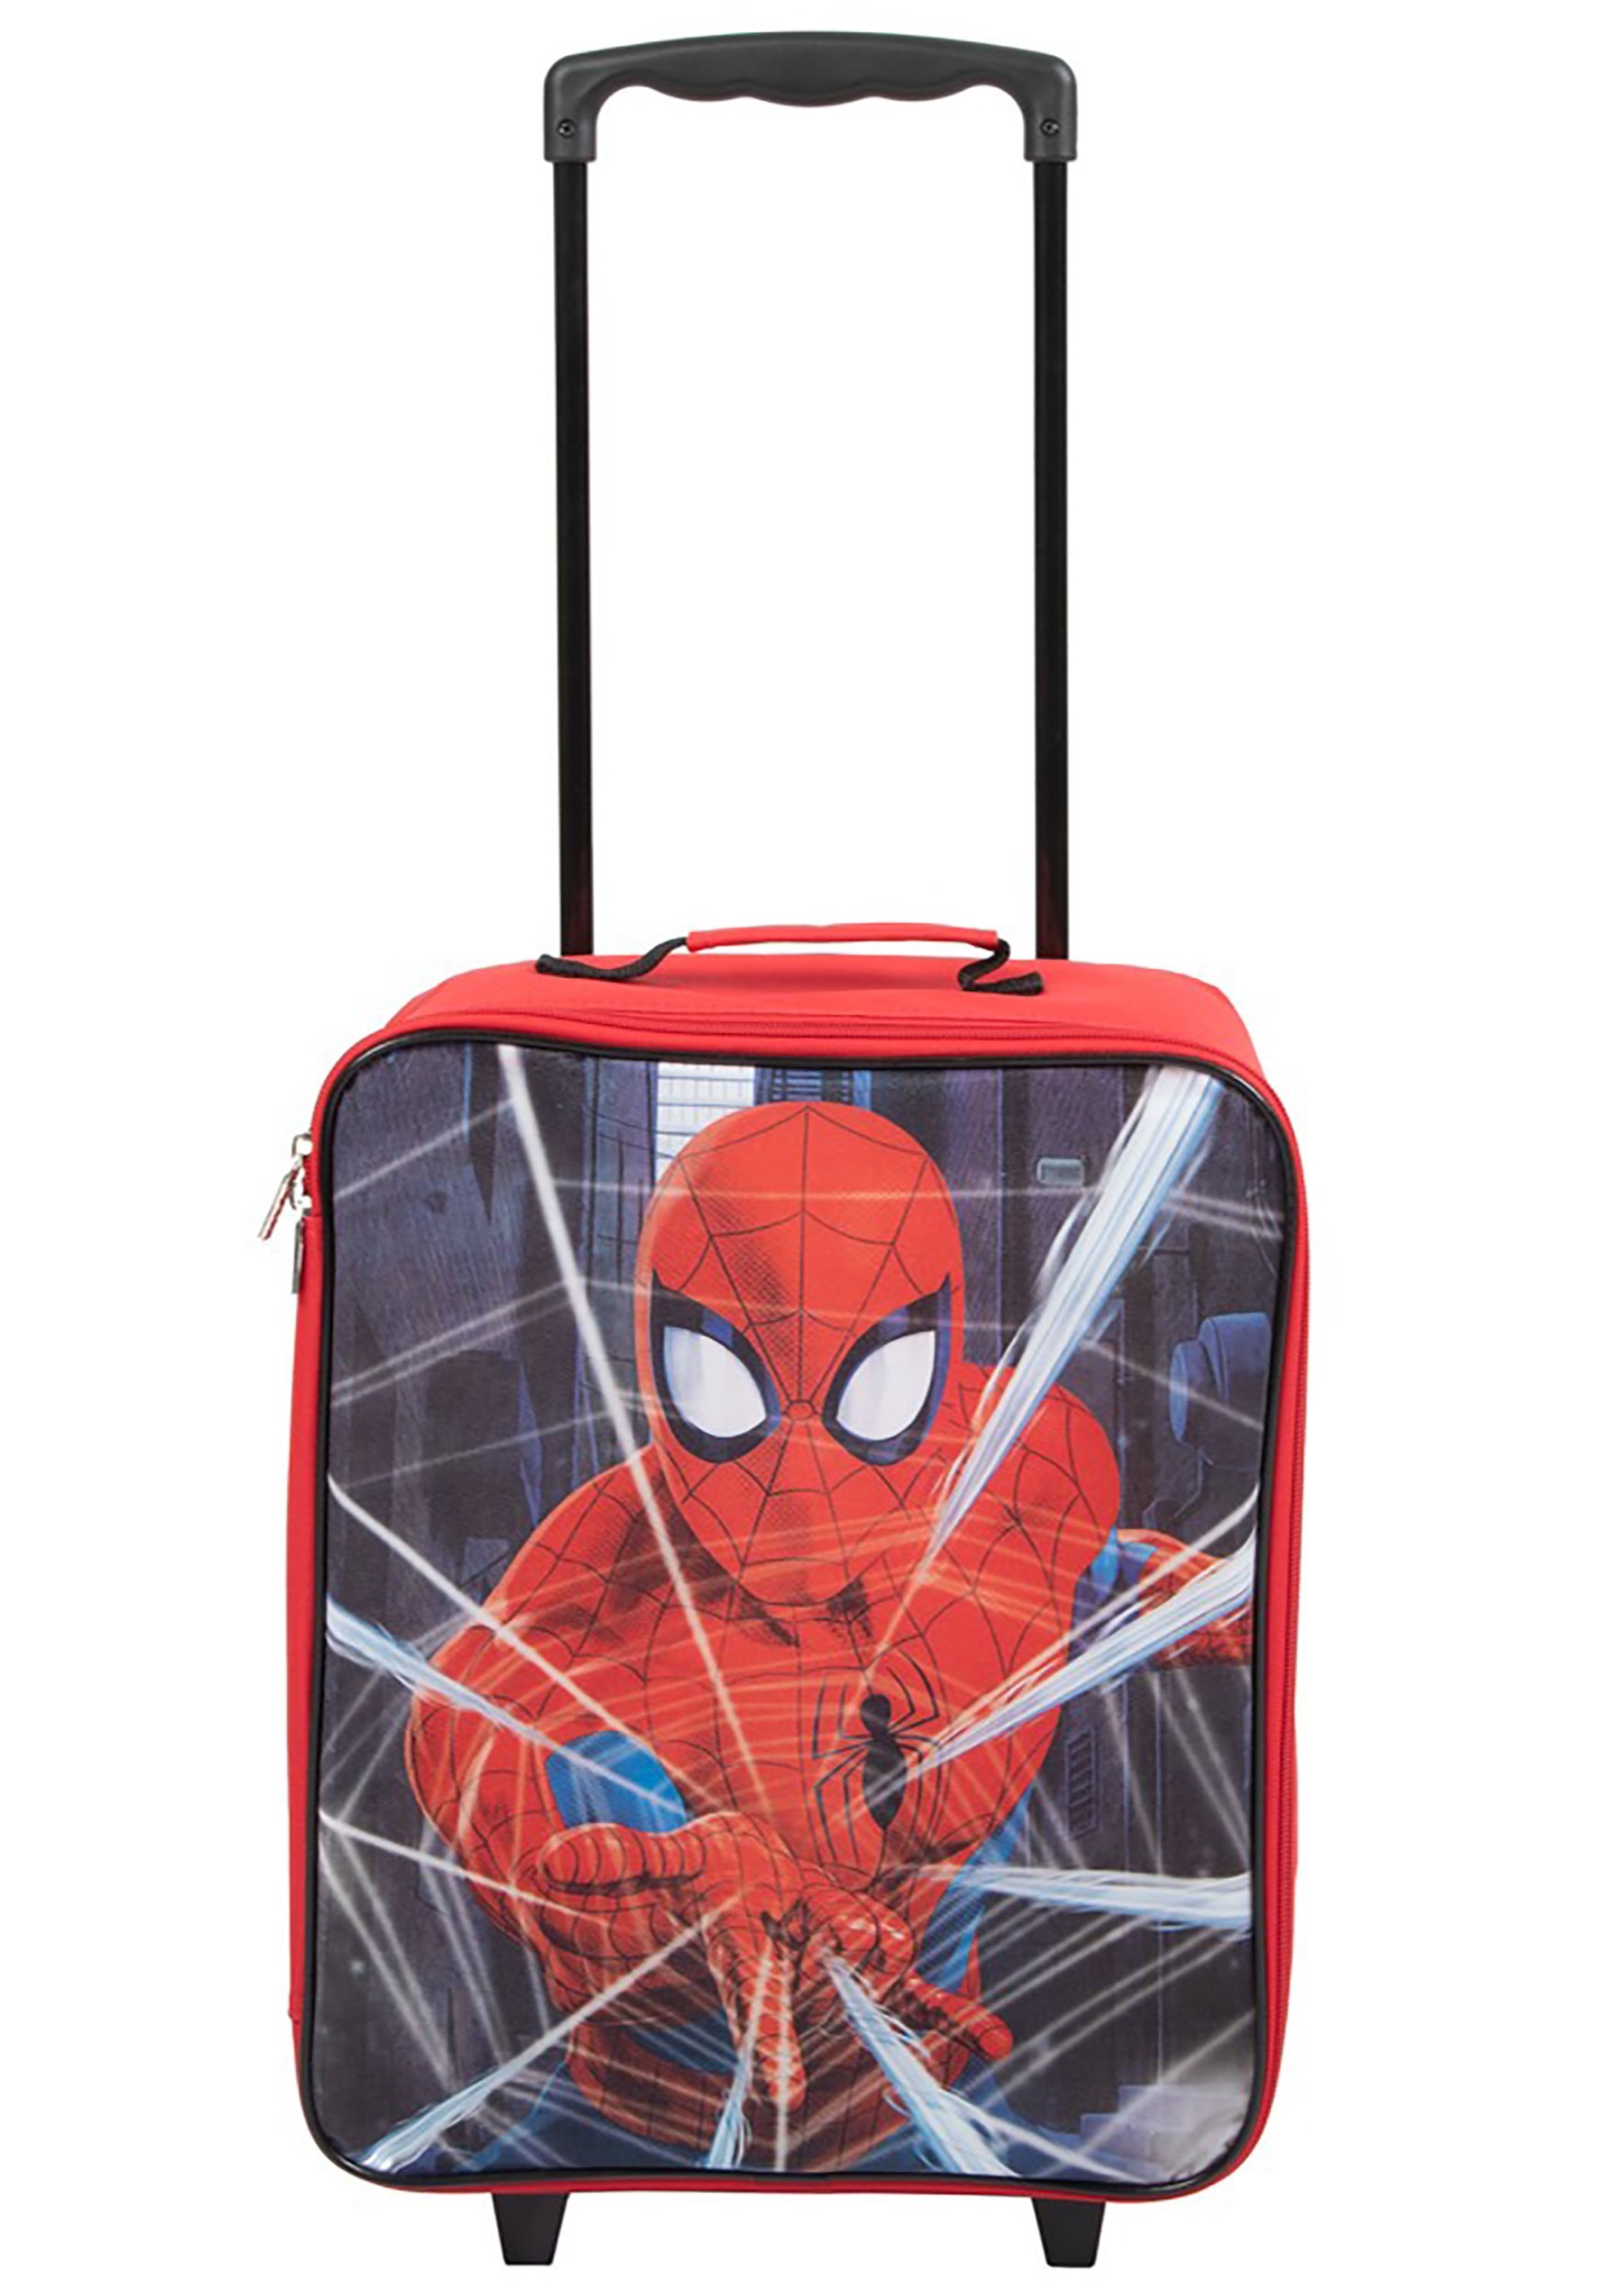 Pilot Luggage Case: Spider-Man